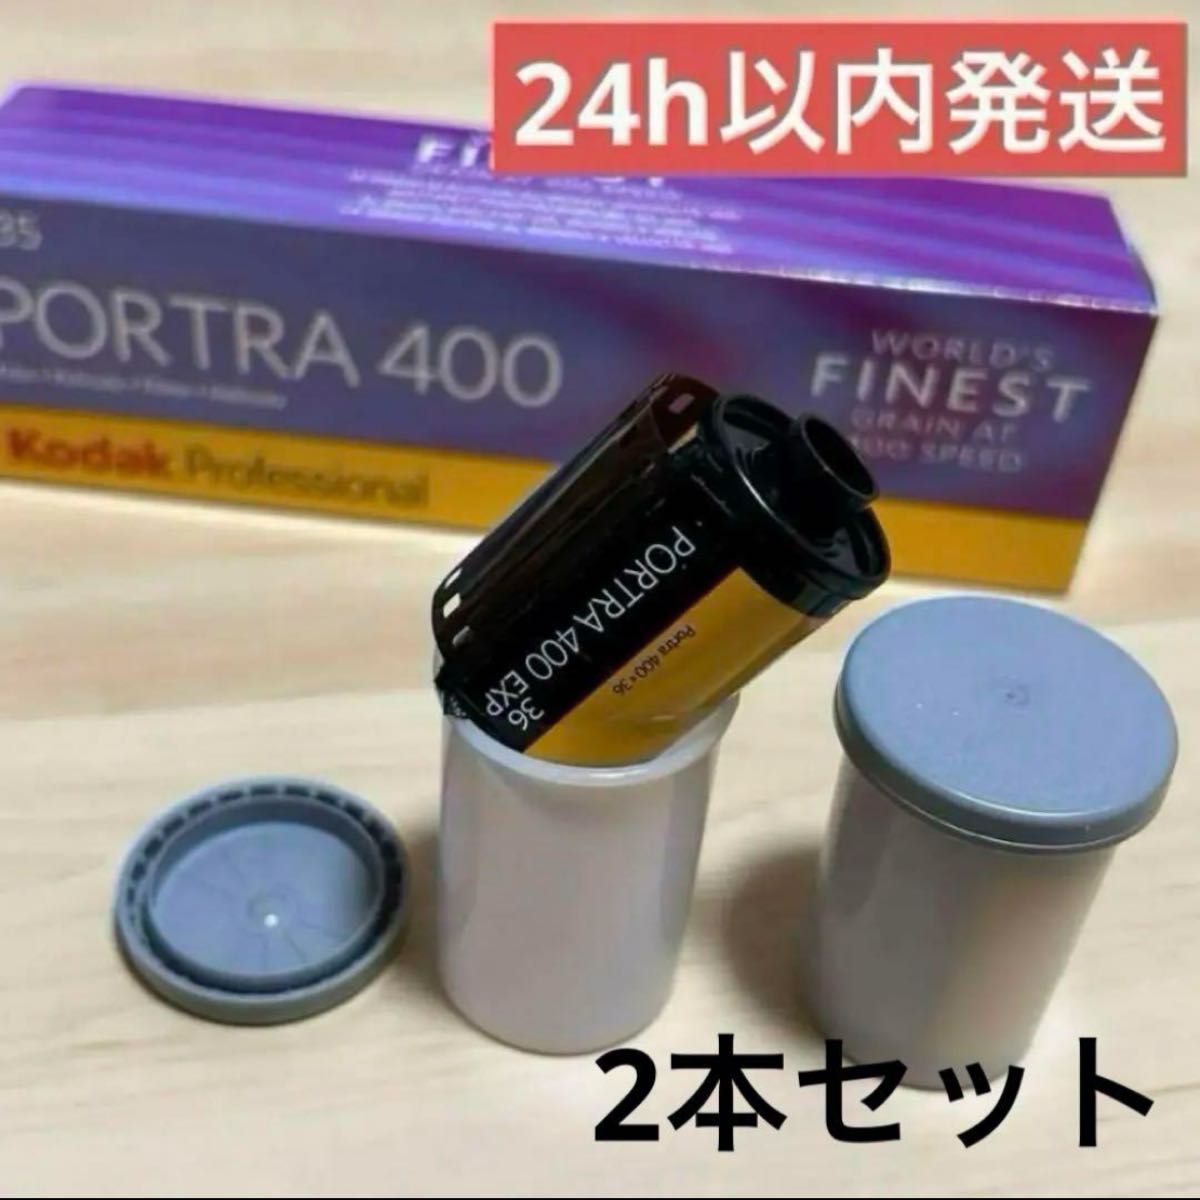 Kodak コダック ポートラ PORTRA 400 35mm 36枚撮